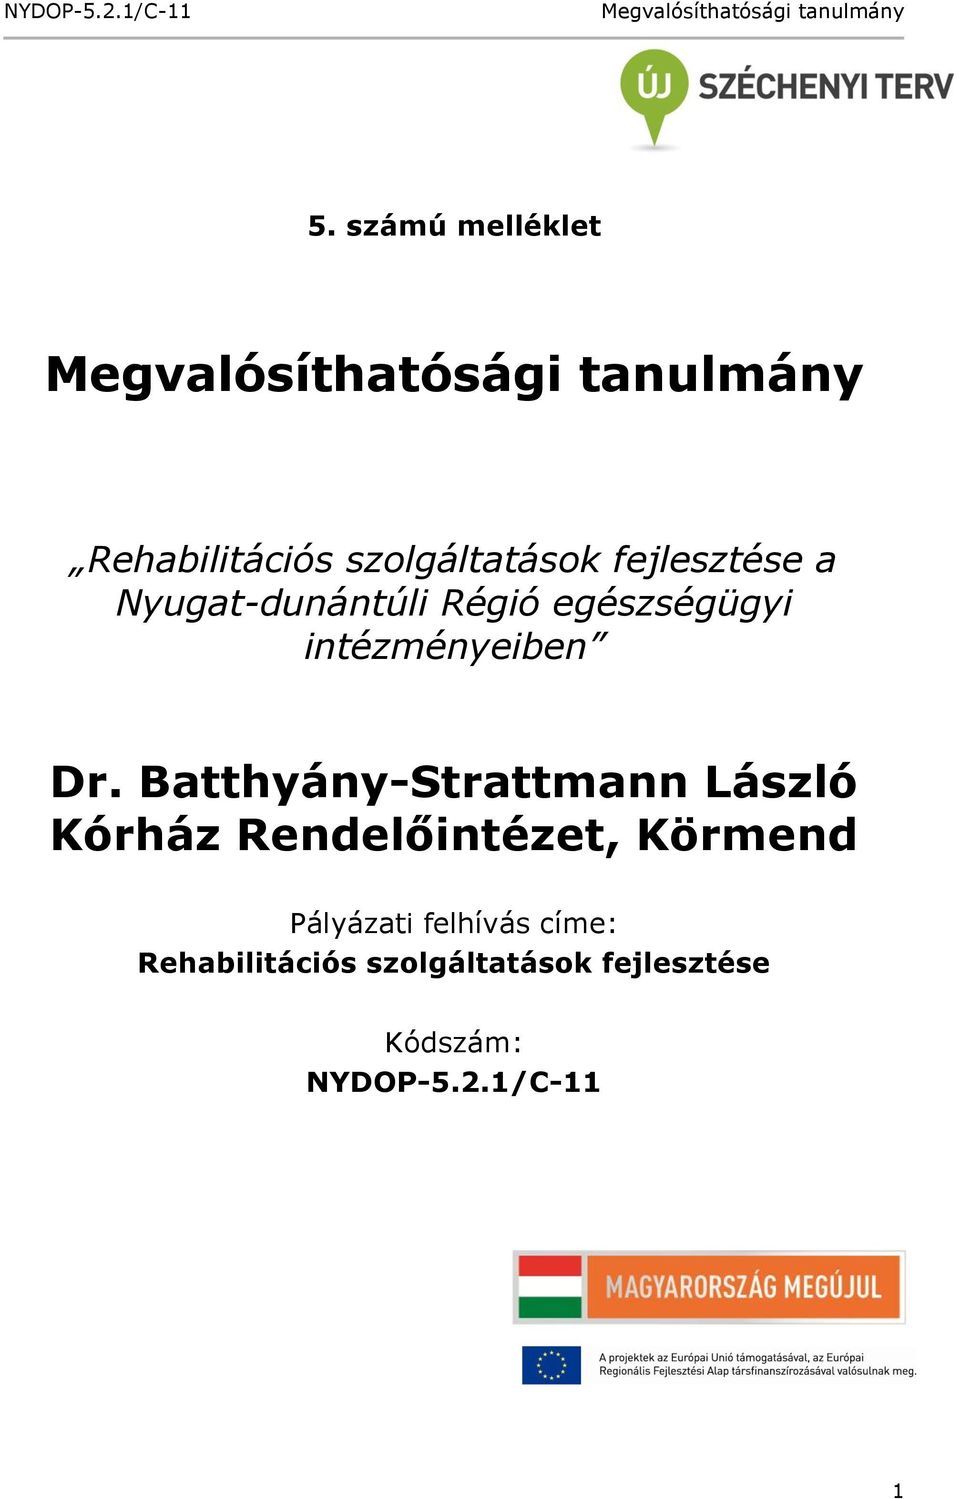 Batthyány-Strattmann László Kórház Rendelőintézet, Körmend